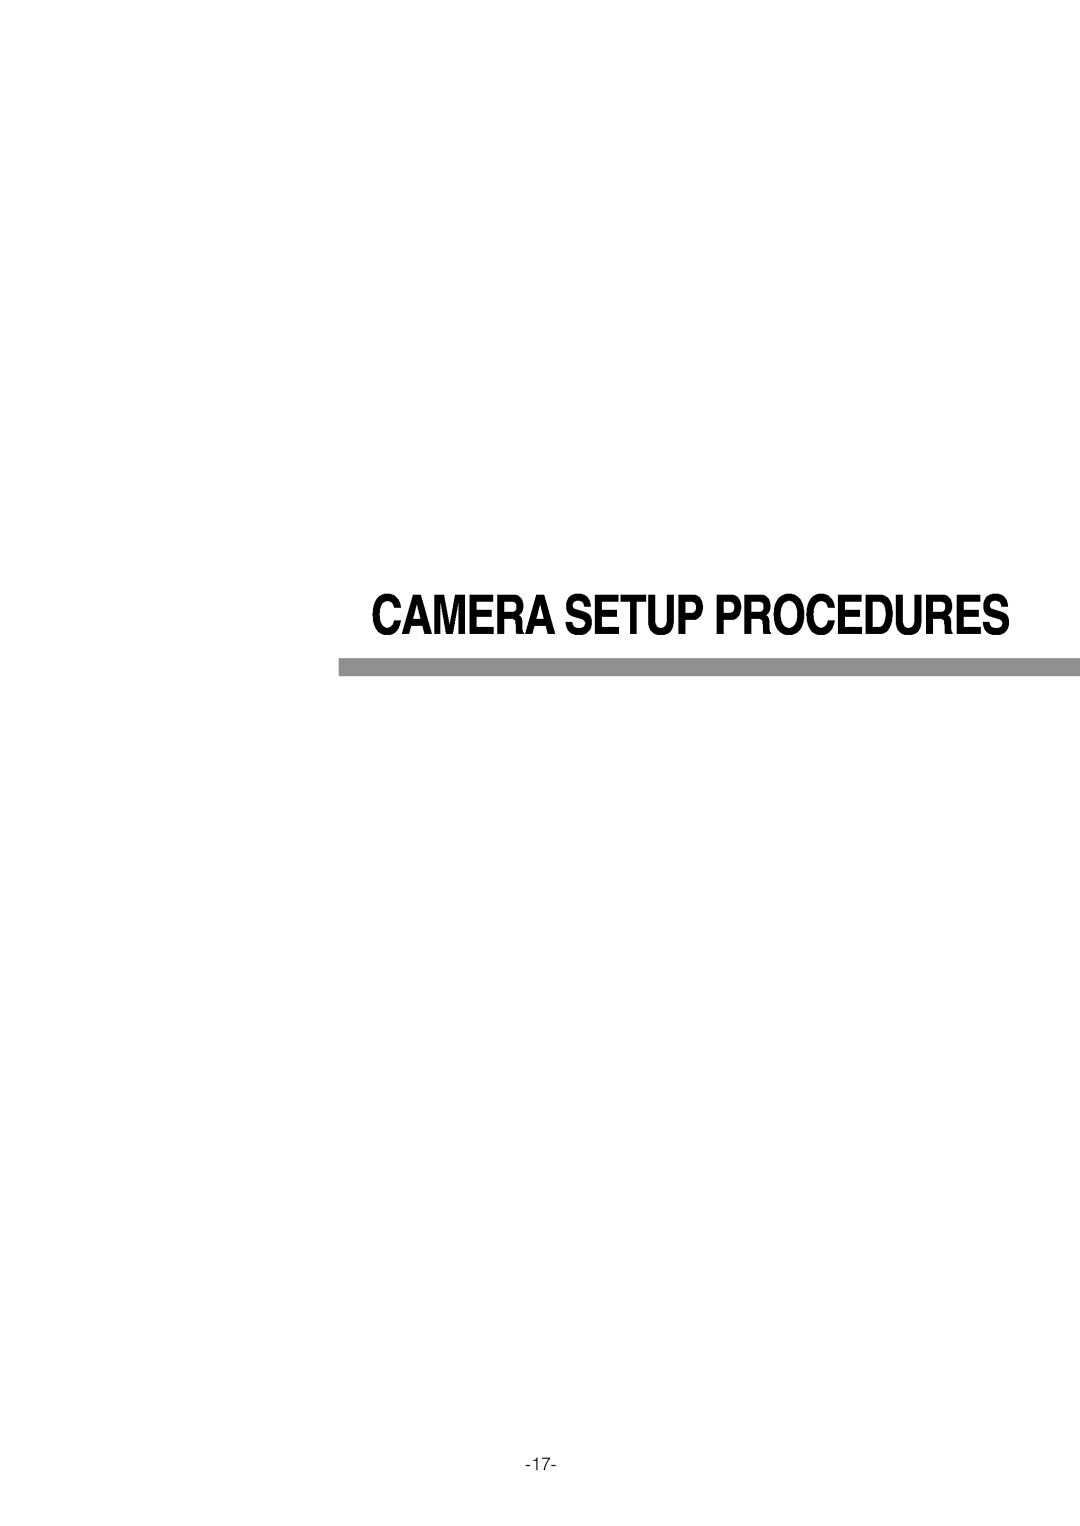 Pantech WV-NW474S manual Camera Setup Procedures 